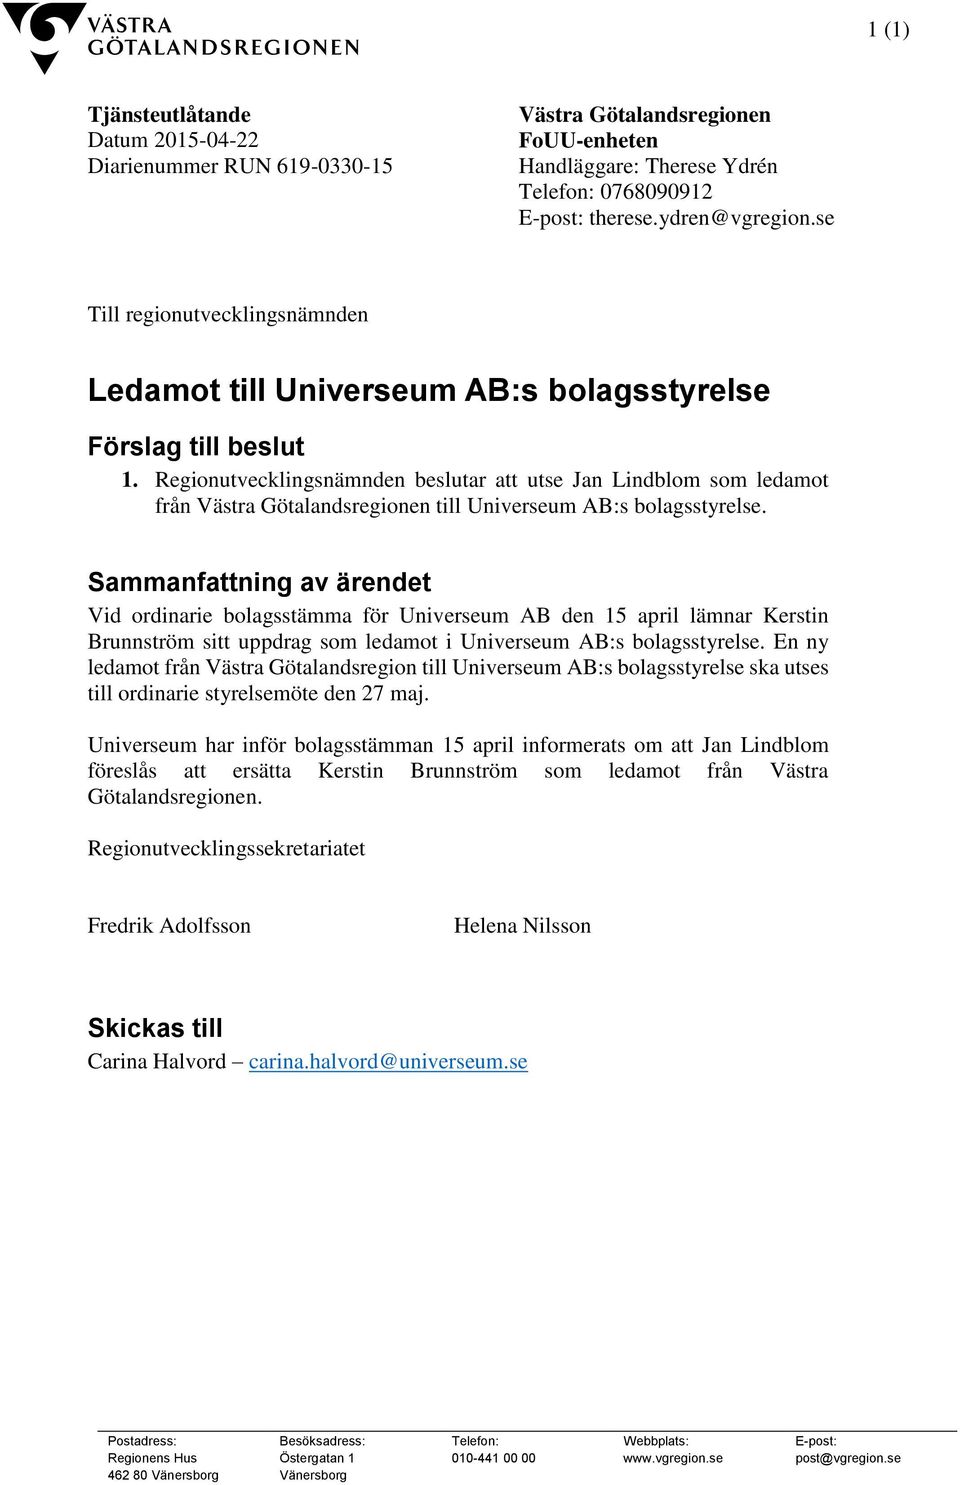 Regionutvecklingsnämnden beslutar att utse Jan Lindblom som ledamot från Västra Götalandsregionen till Universeum AB:s bolagsstyrelse.